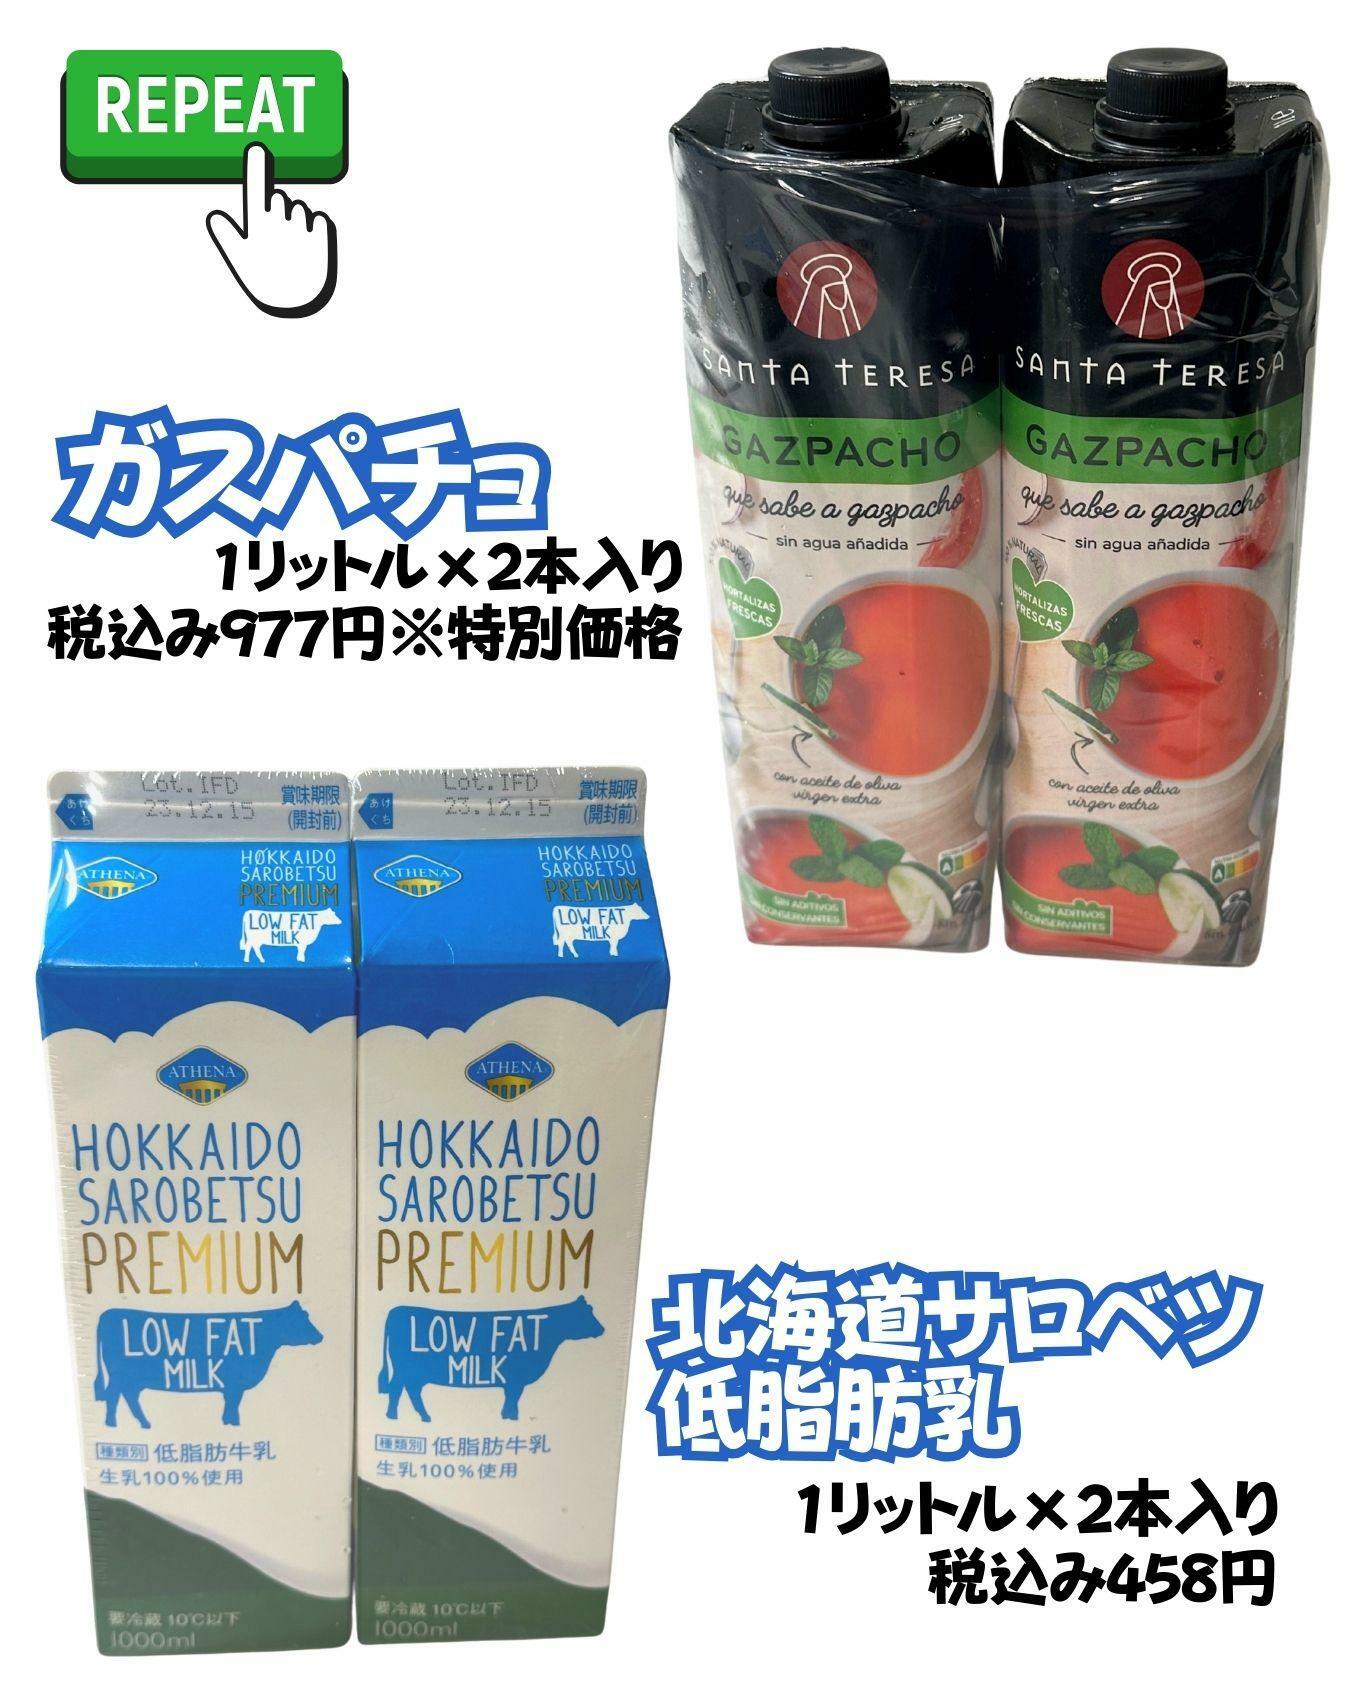 【コストコ】ガスパチョ/北海道サロベツ低脂肪乳